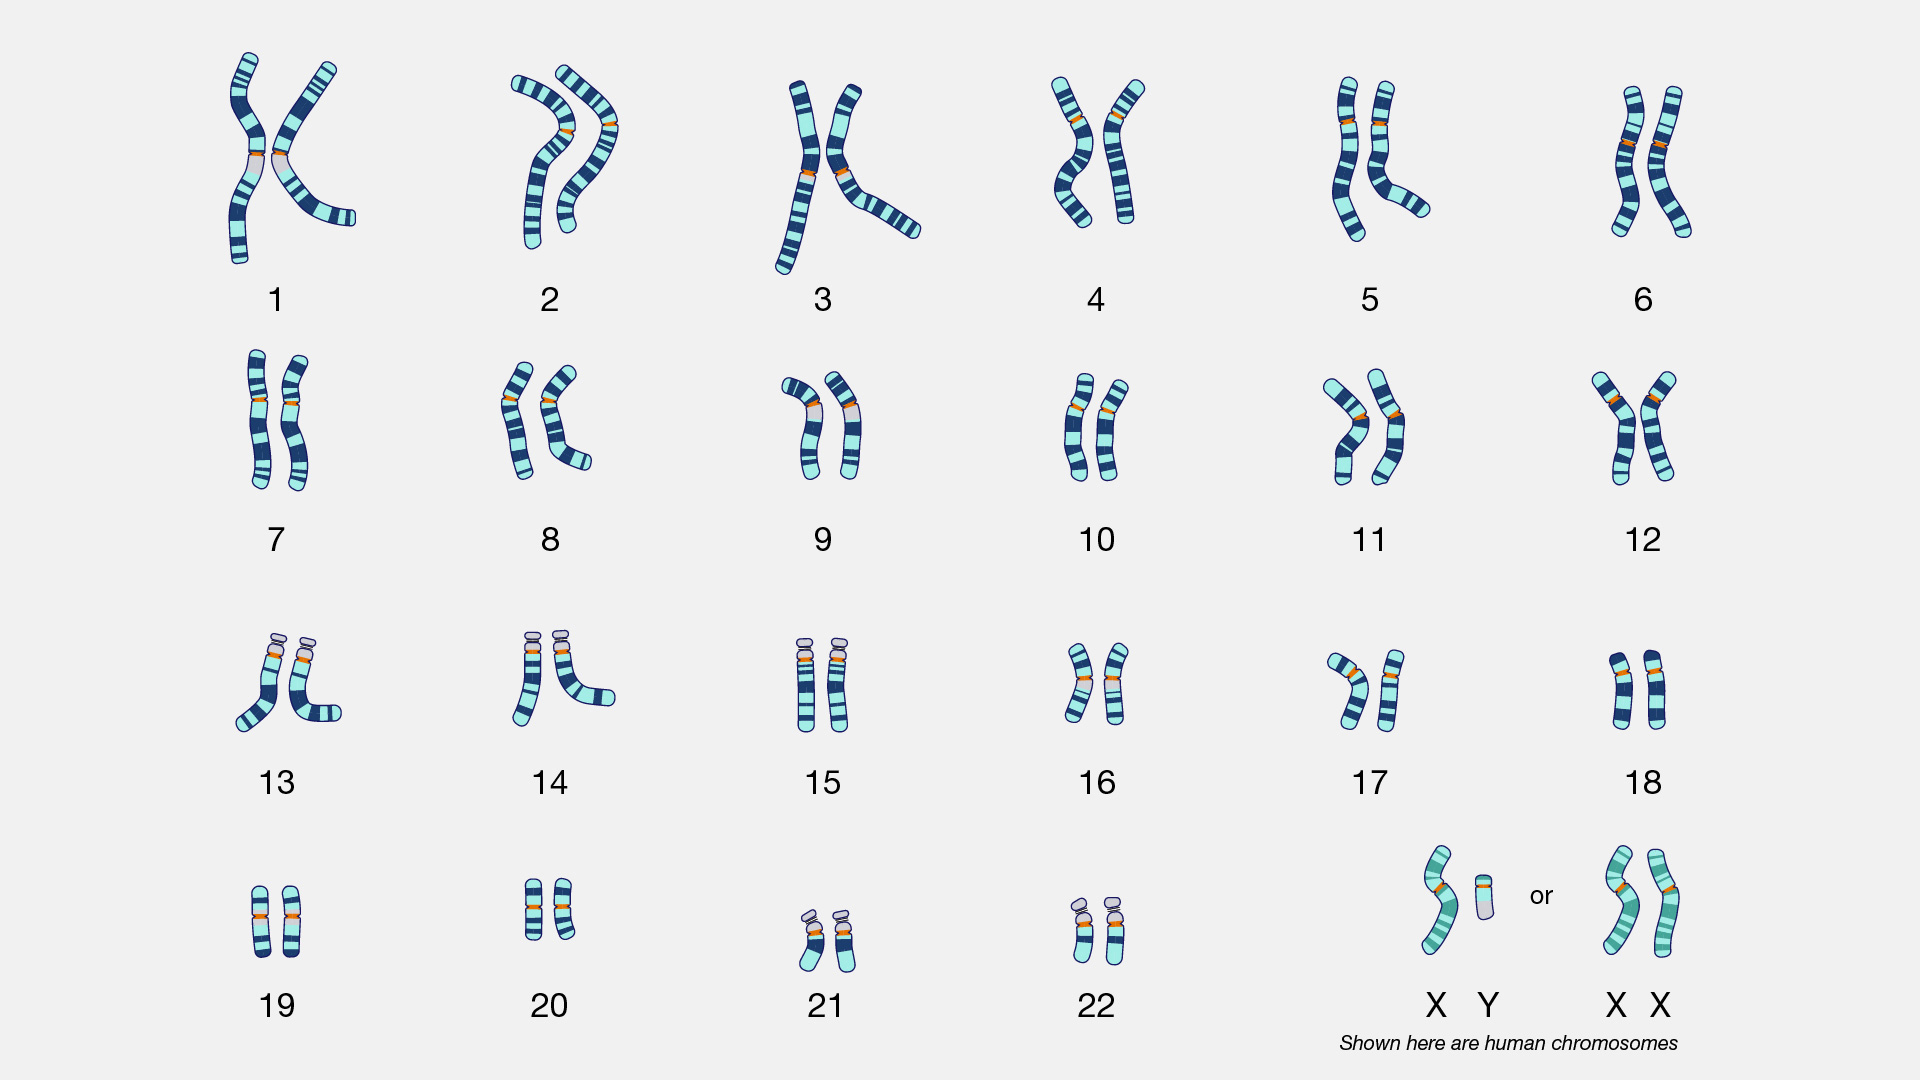 En bild, så kallad karyotyp, av människans kromosomer. Mänskliga celler är diploida, vilket innebär att varje kromosom finns i två upplagor. Könskromosomerna kan vara både XY (män) och XX (kvinnor).